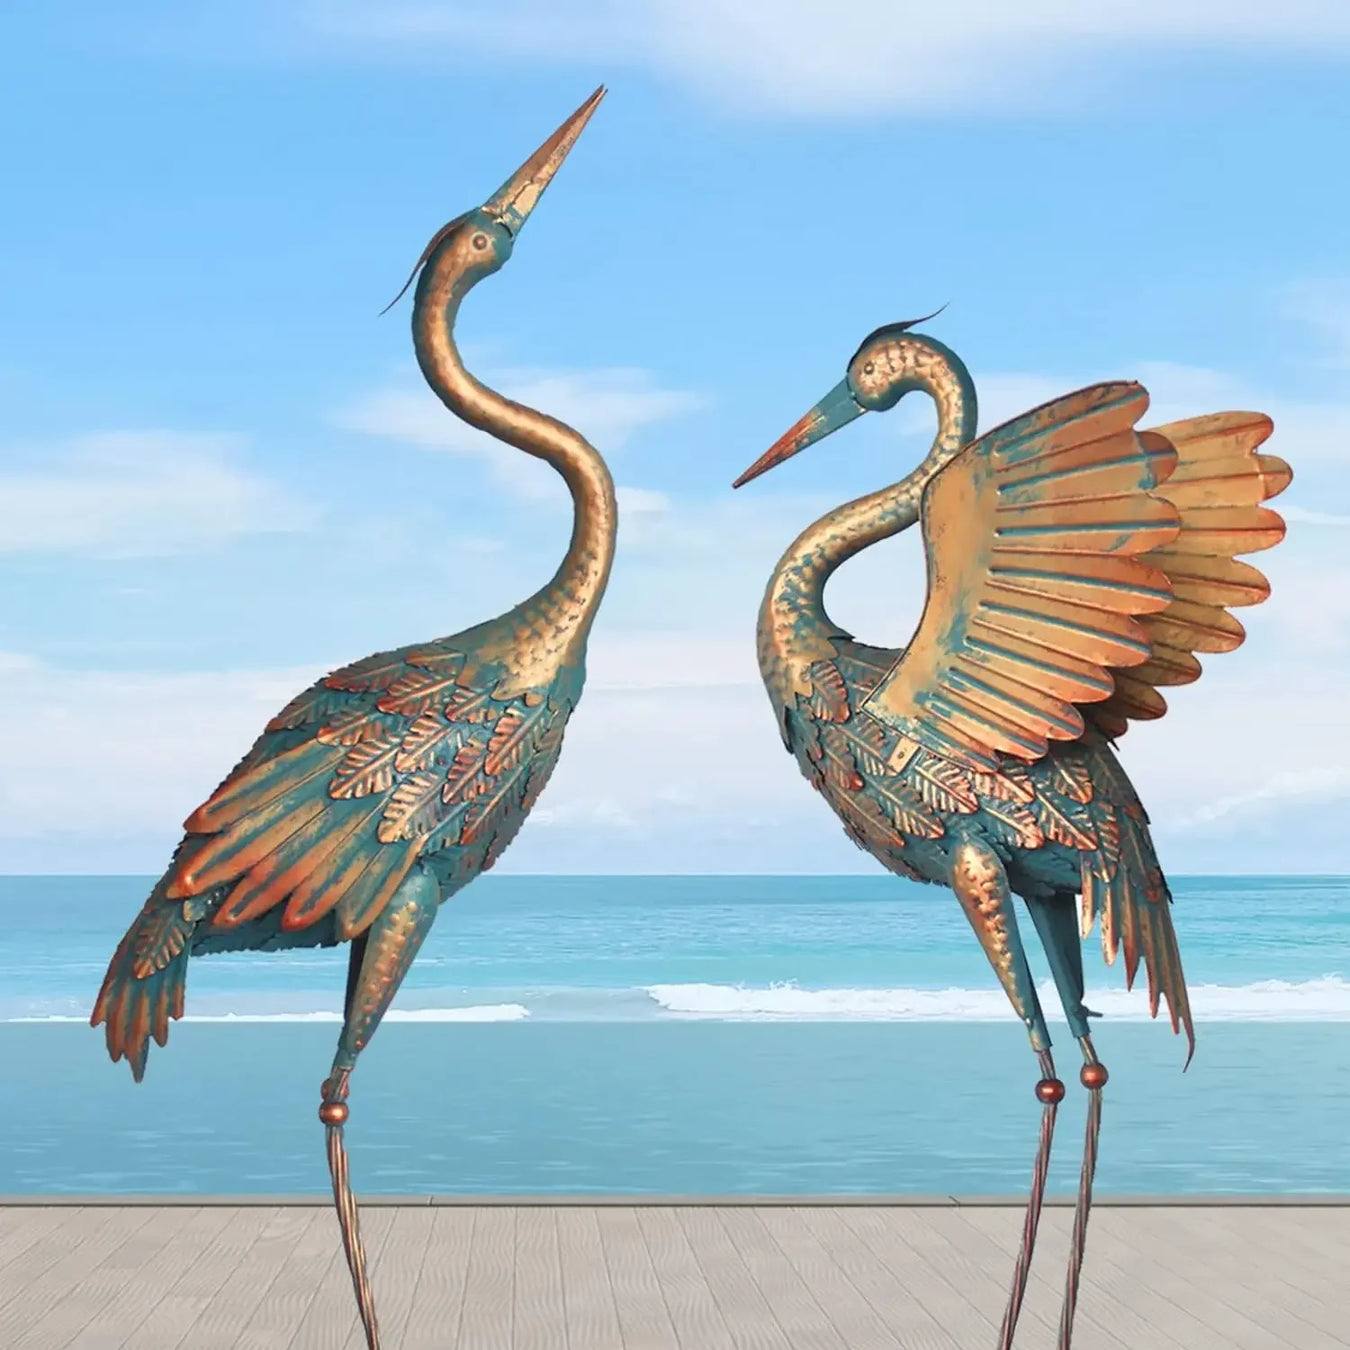 Bronze Heron Crane Sculpture for Outdoor Garden Décor - 33-37 Inches